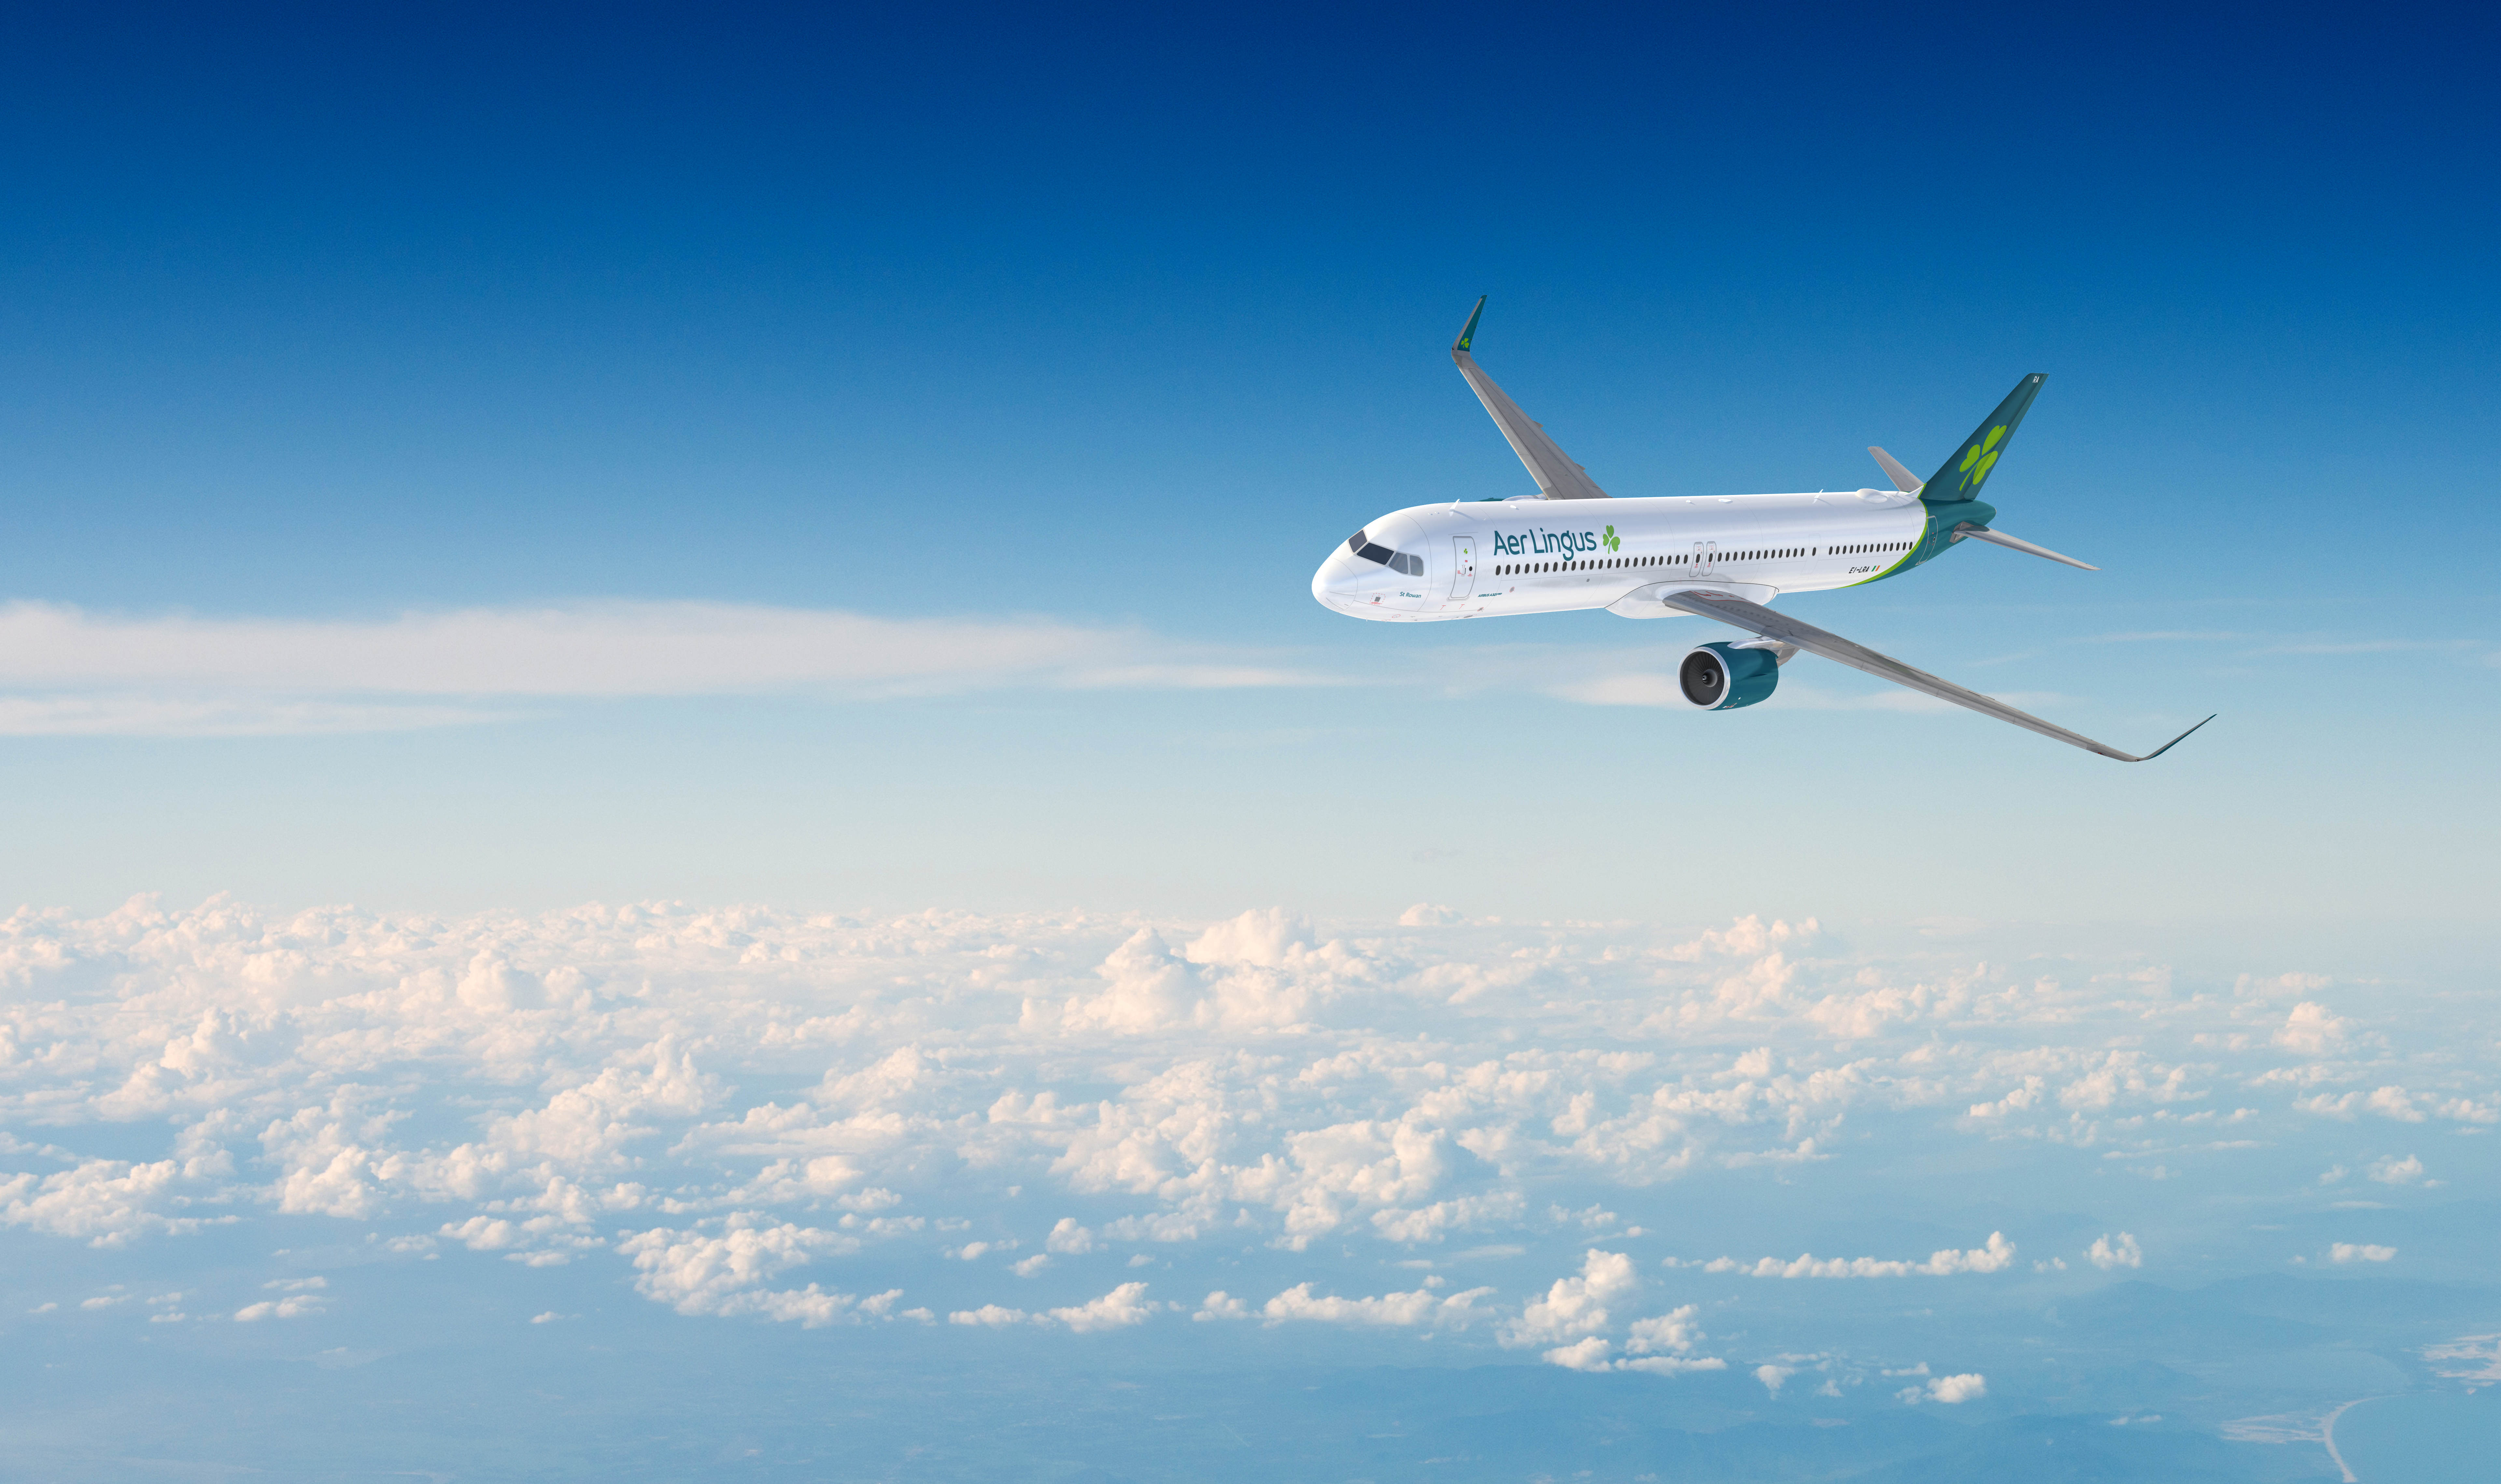 Aer Lingus announces Cleveland as latest transatlantic route for summer 2023